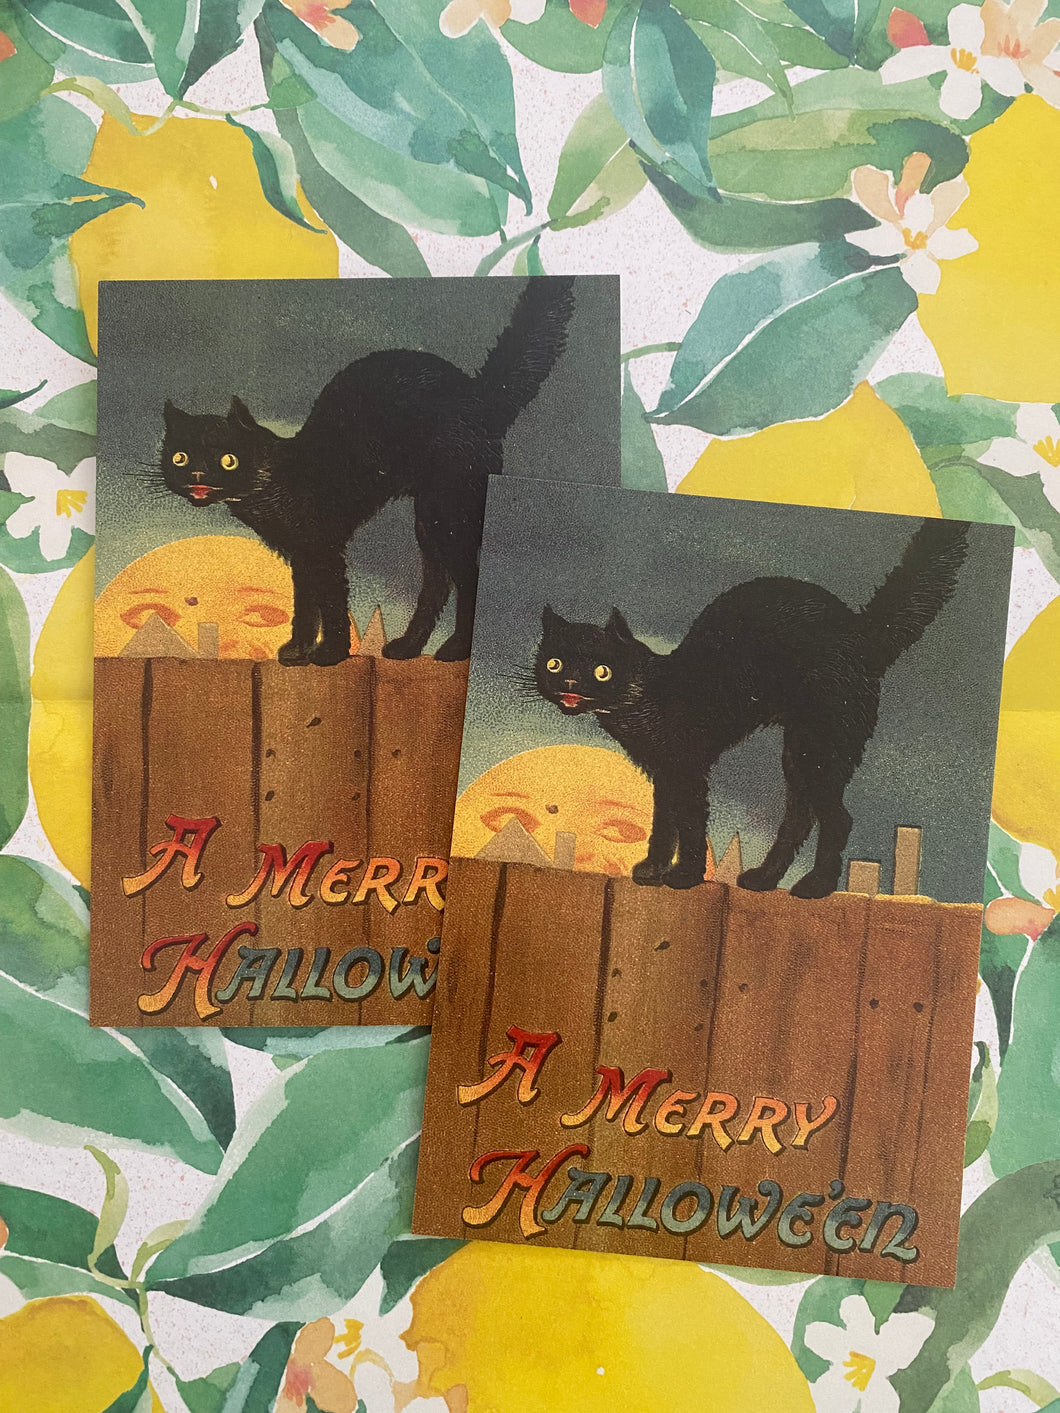 A Merry Halloween postcard